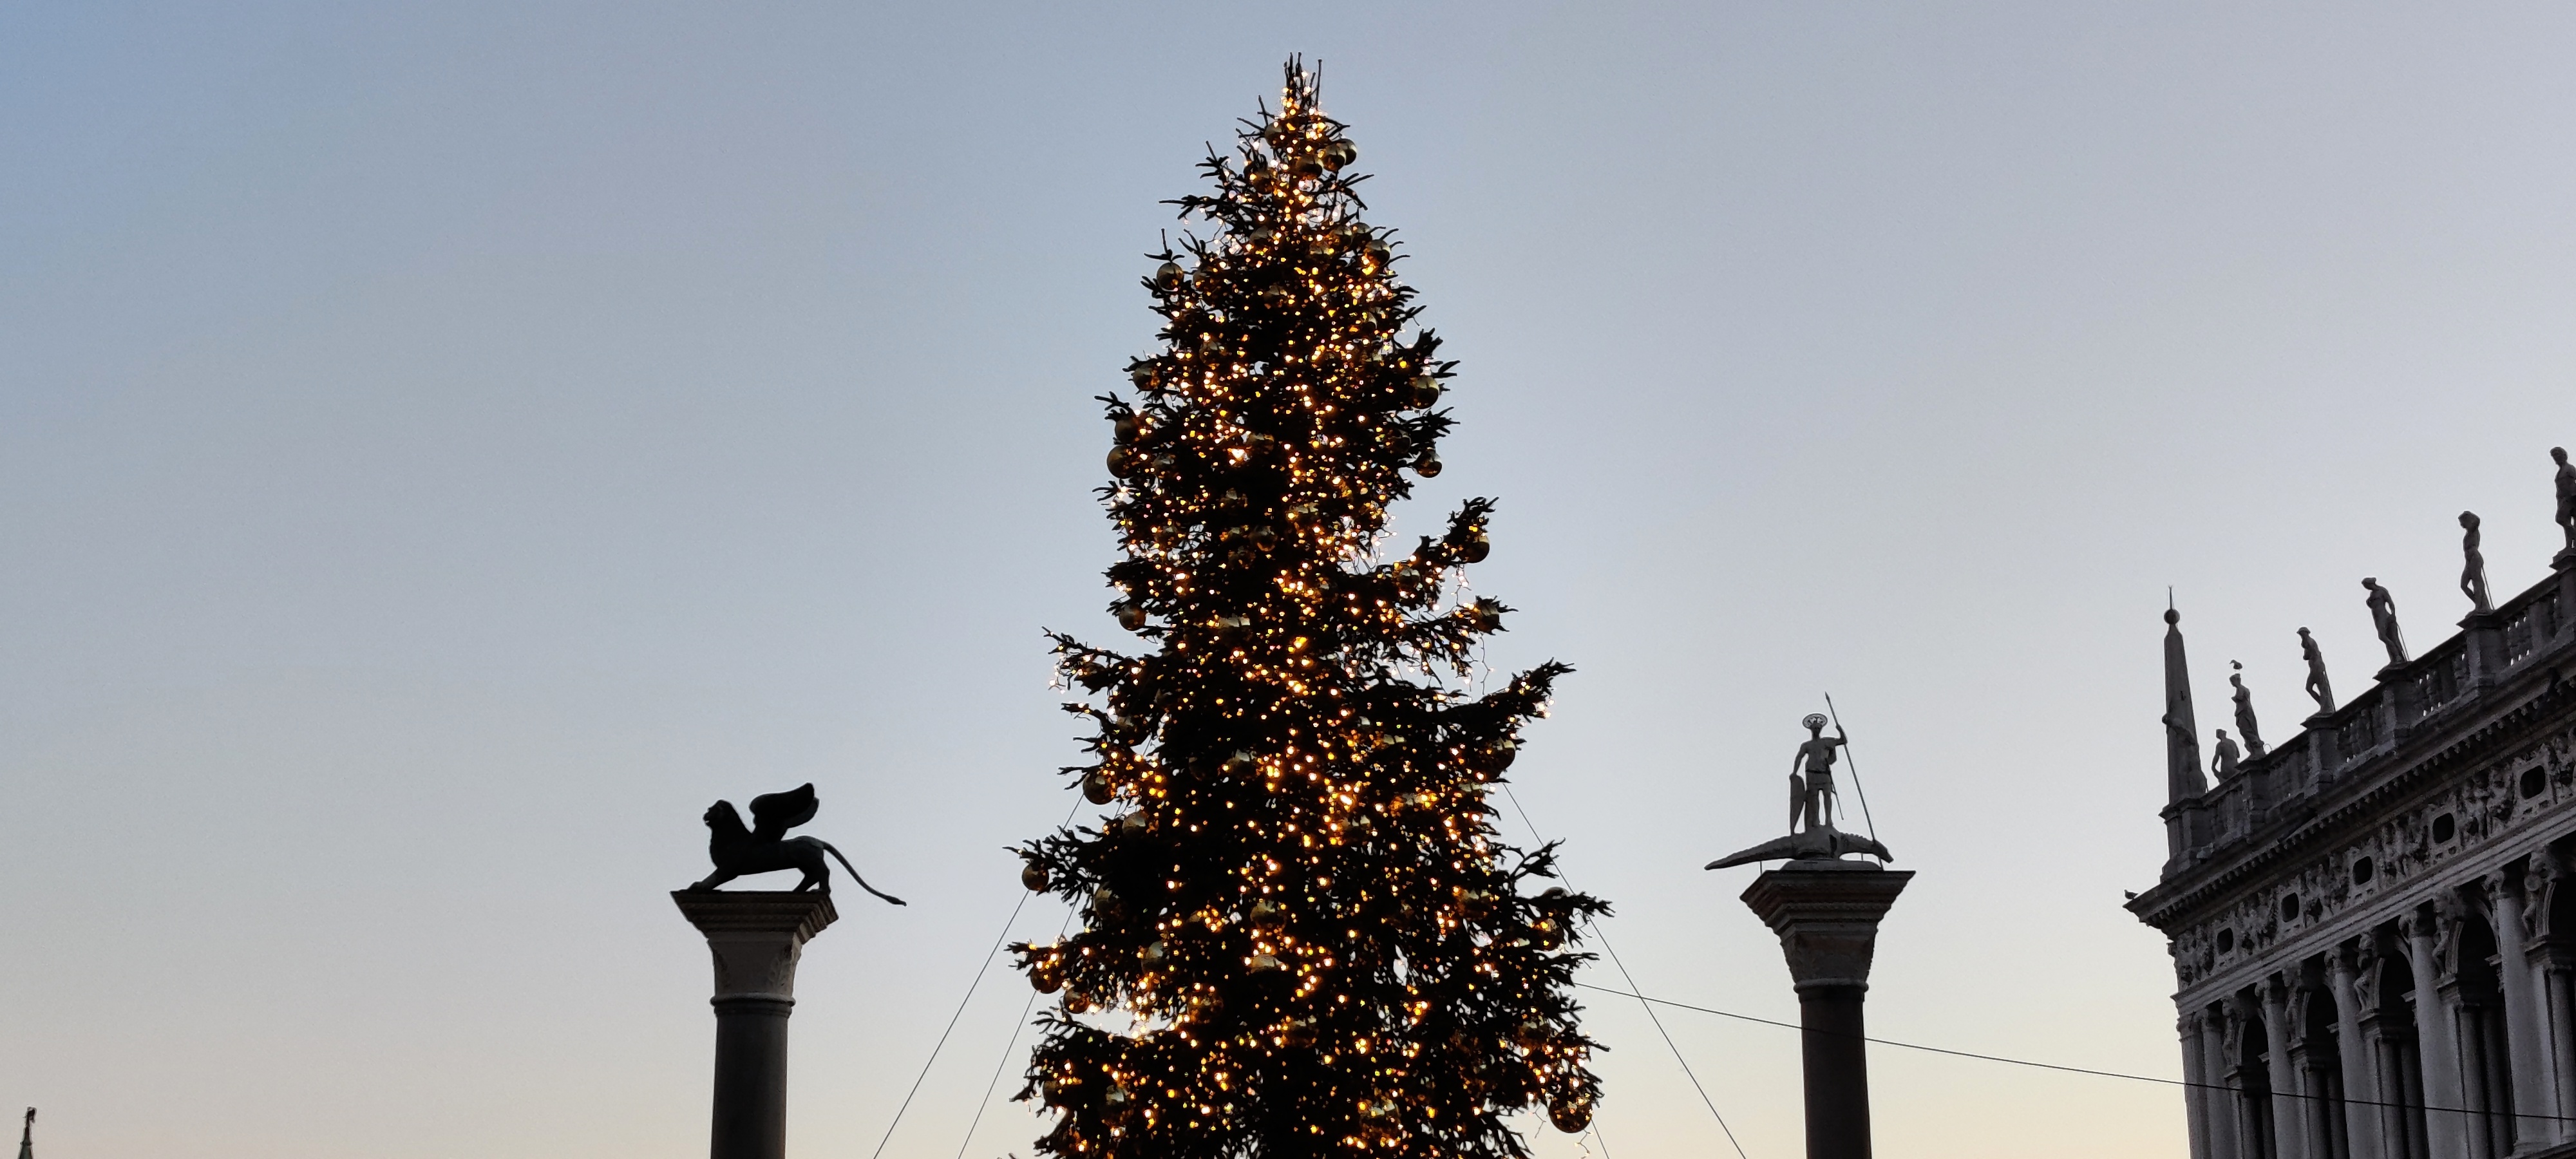 Árbol de Navidad de la Plaza de San Marcos - Venecia en 3 días